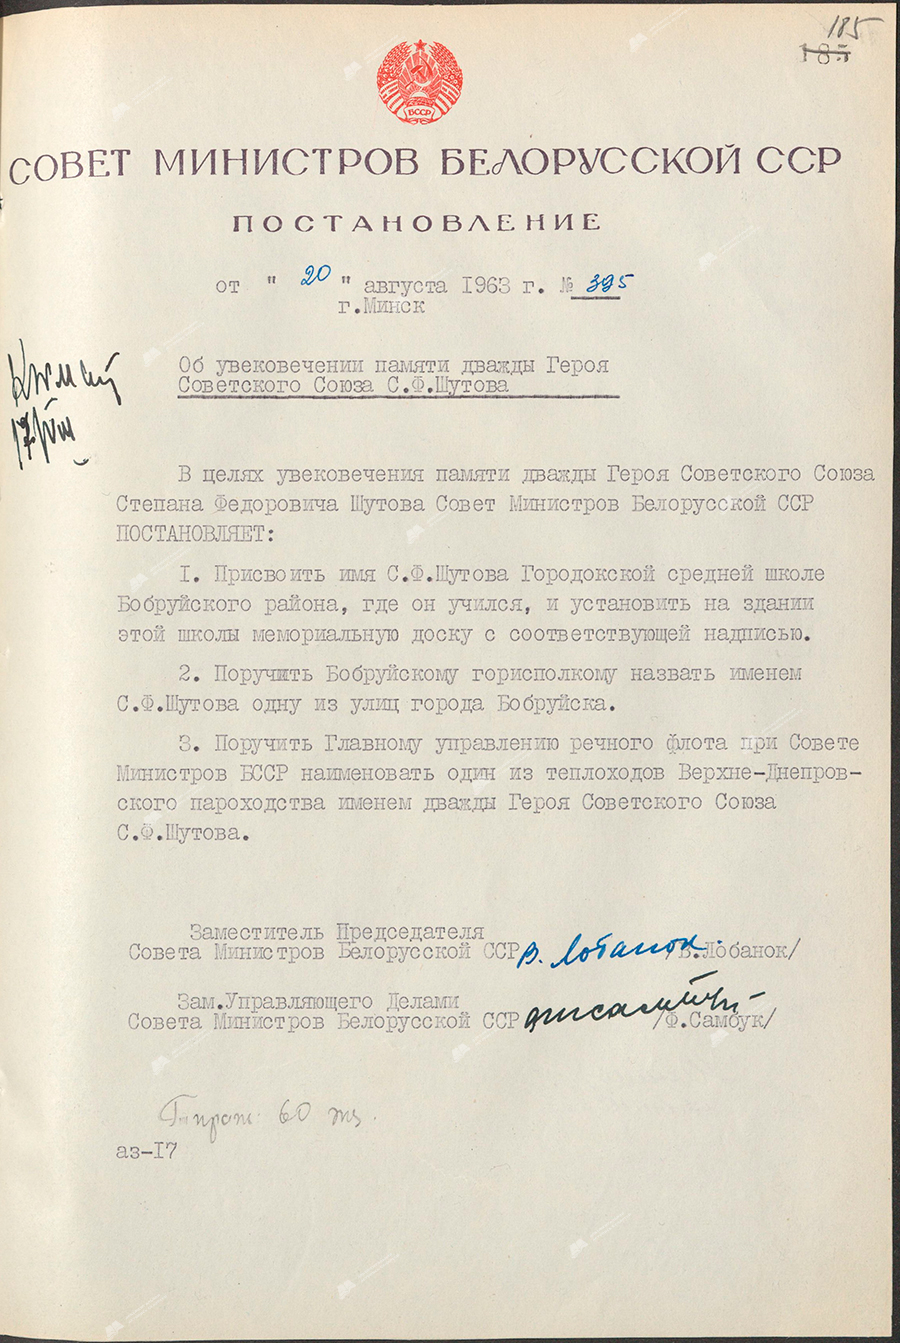 Beschluss Nr. 395 des Ministerrates der BSSR «Über die Verewigung des Gedächtnisses des zweimal Helden der Sowjetunion, S.F. Shutov»-с. 0